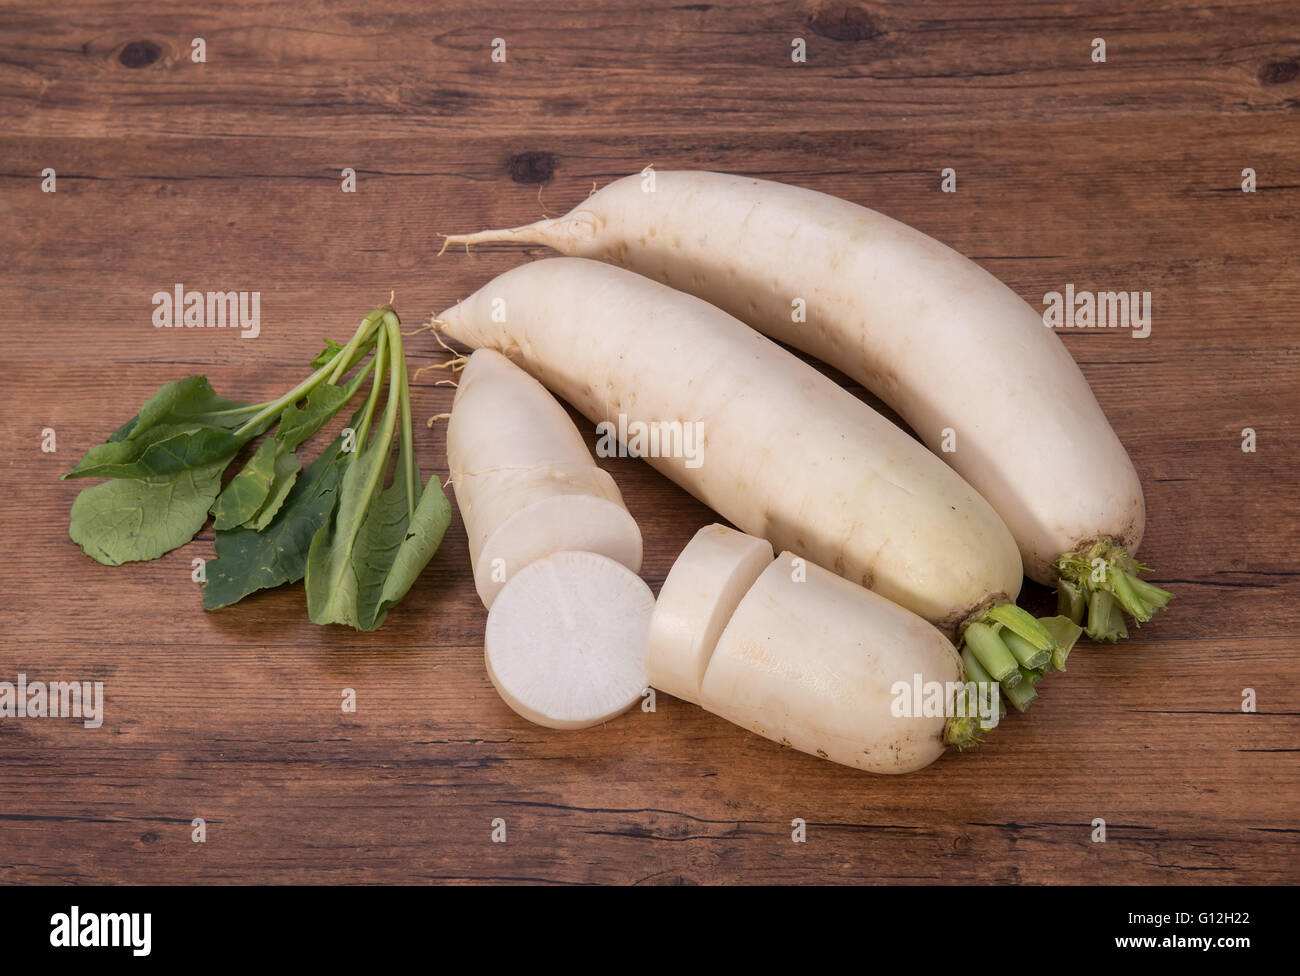 Daikon radish on the wood background Stock Photo